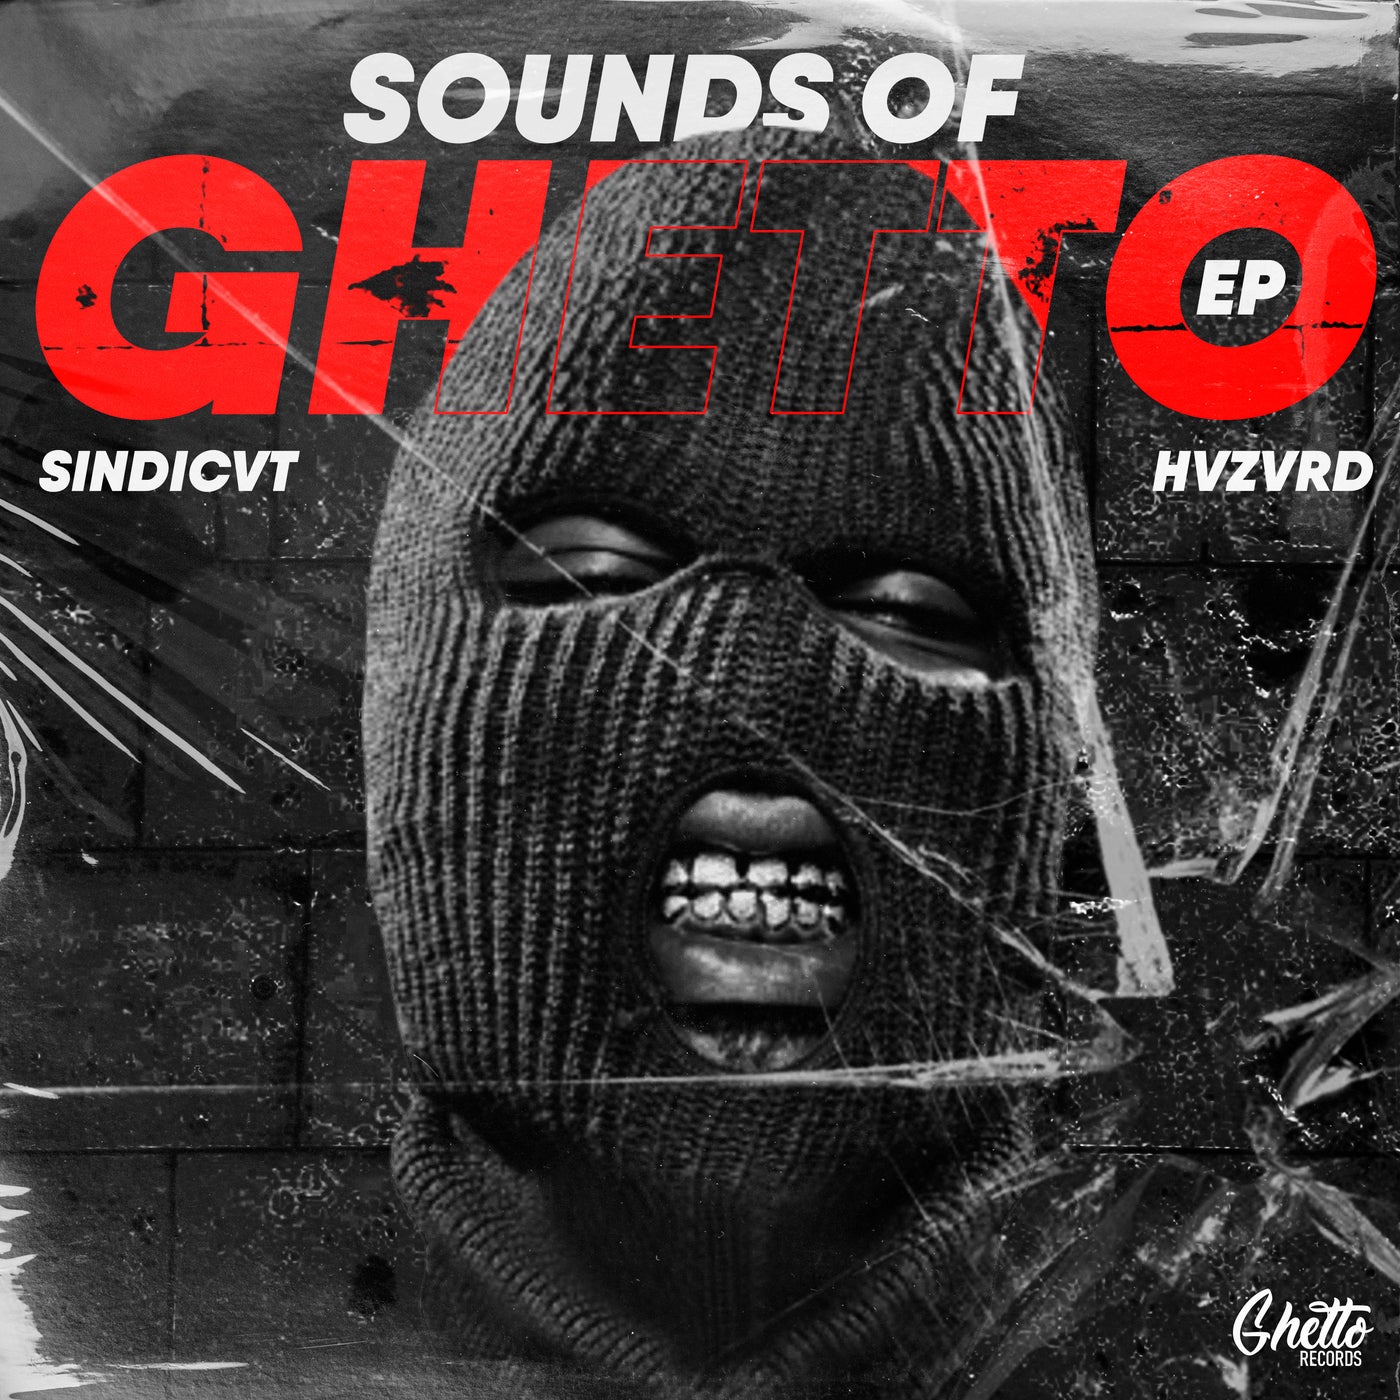 Sounds Of Ghetto EP